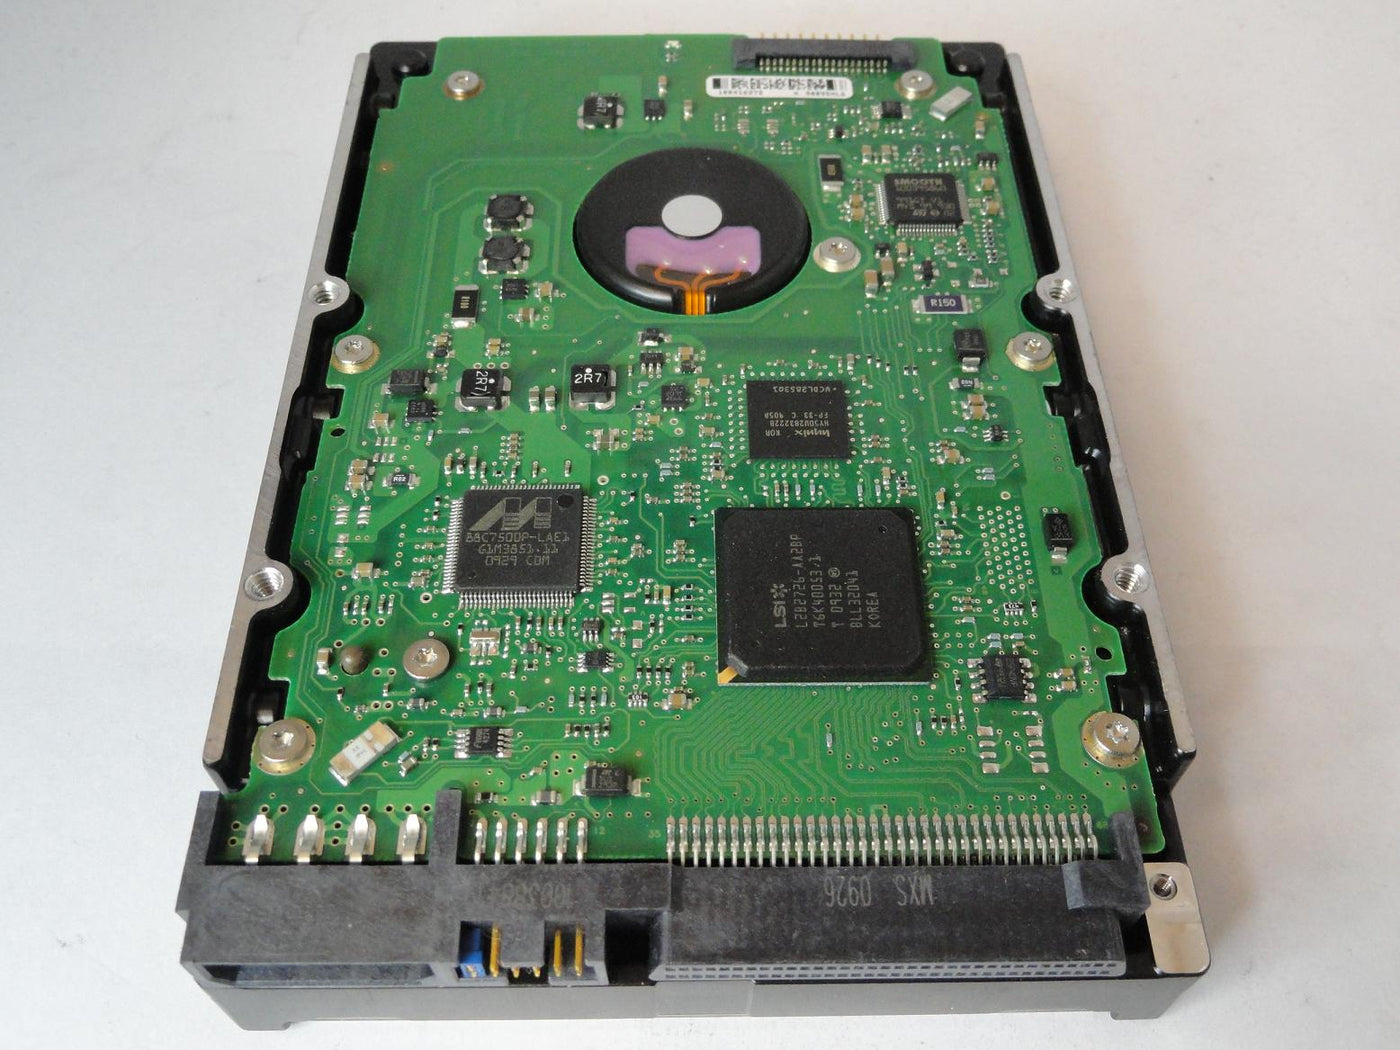 PR22277_9Z2005-005_Seagate 146GB SCSI 68 Pin 15Krpm 3.5in HDD - Image2